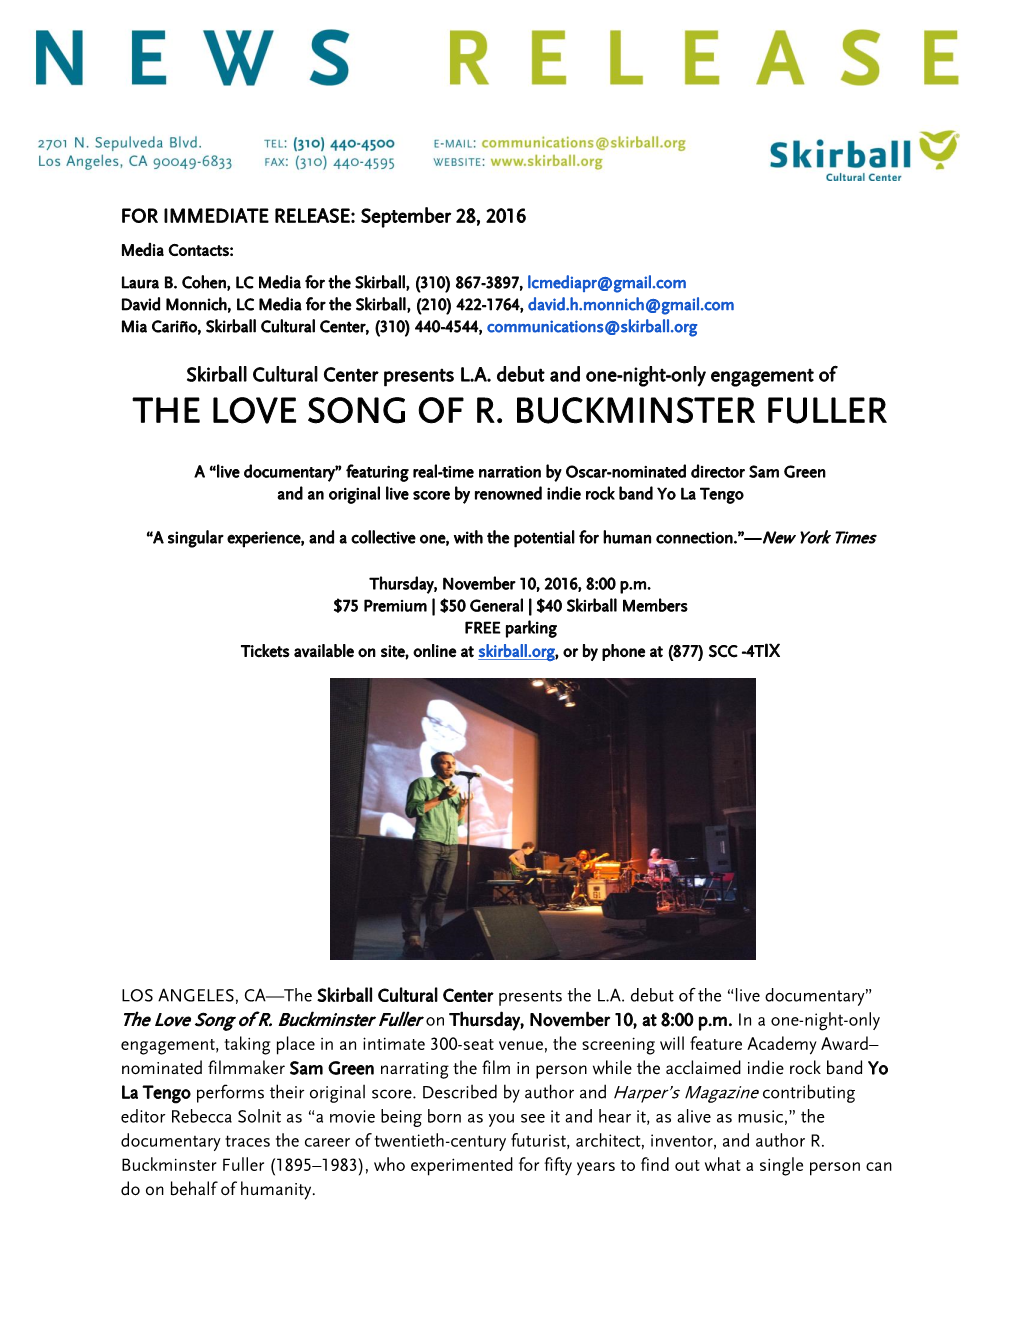 The Love Song of R. Buckminster Fuller Press Release